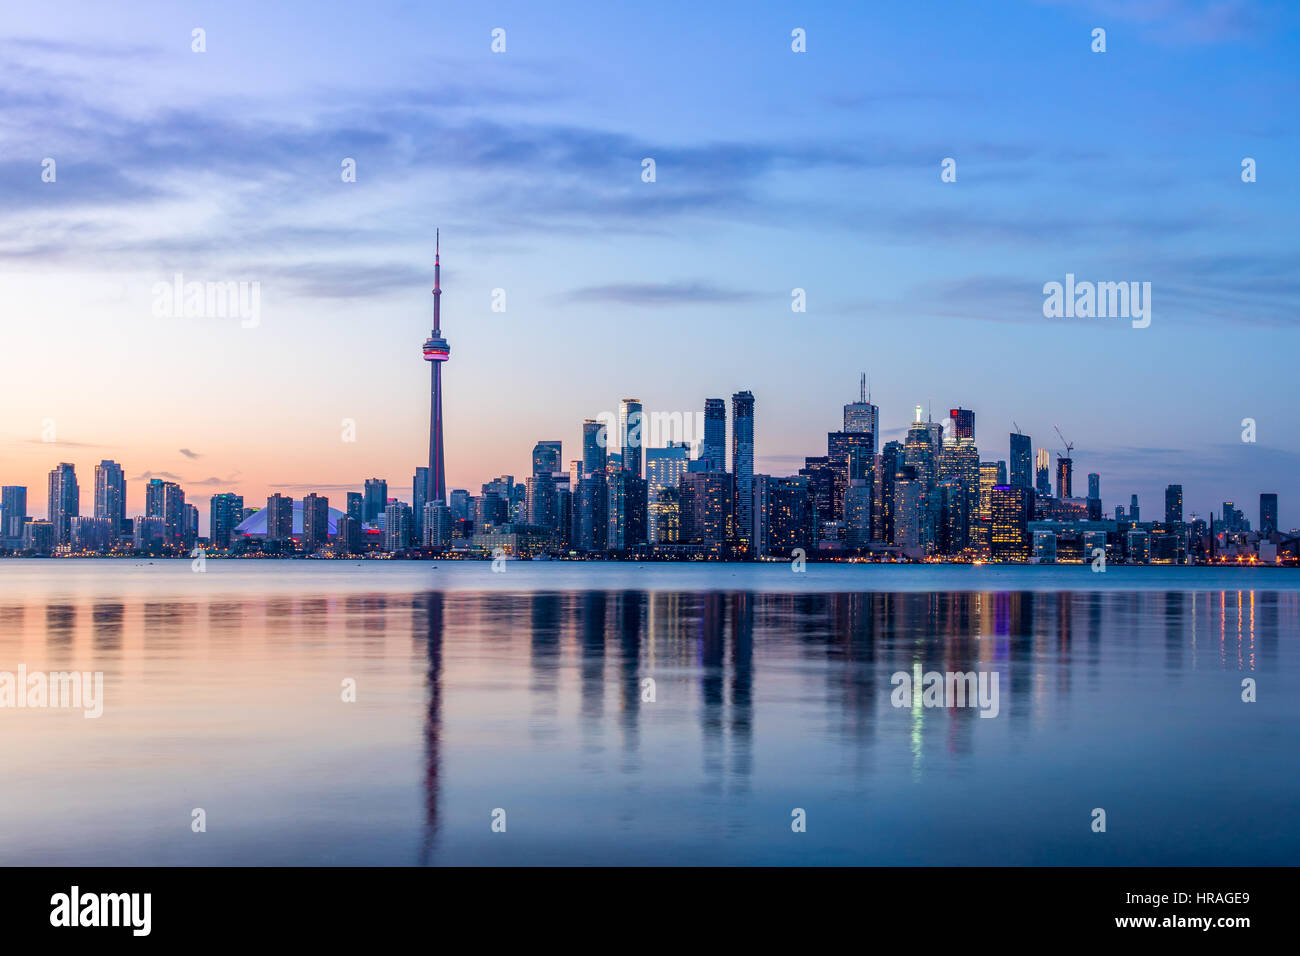 Toronto Skyline - Toronto, Ontario, Canada Stock Photo